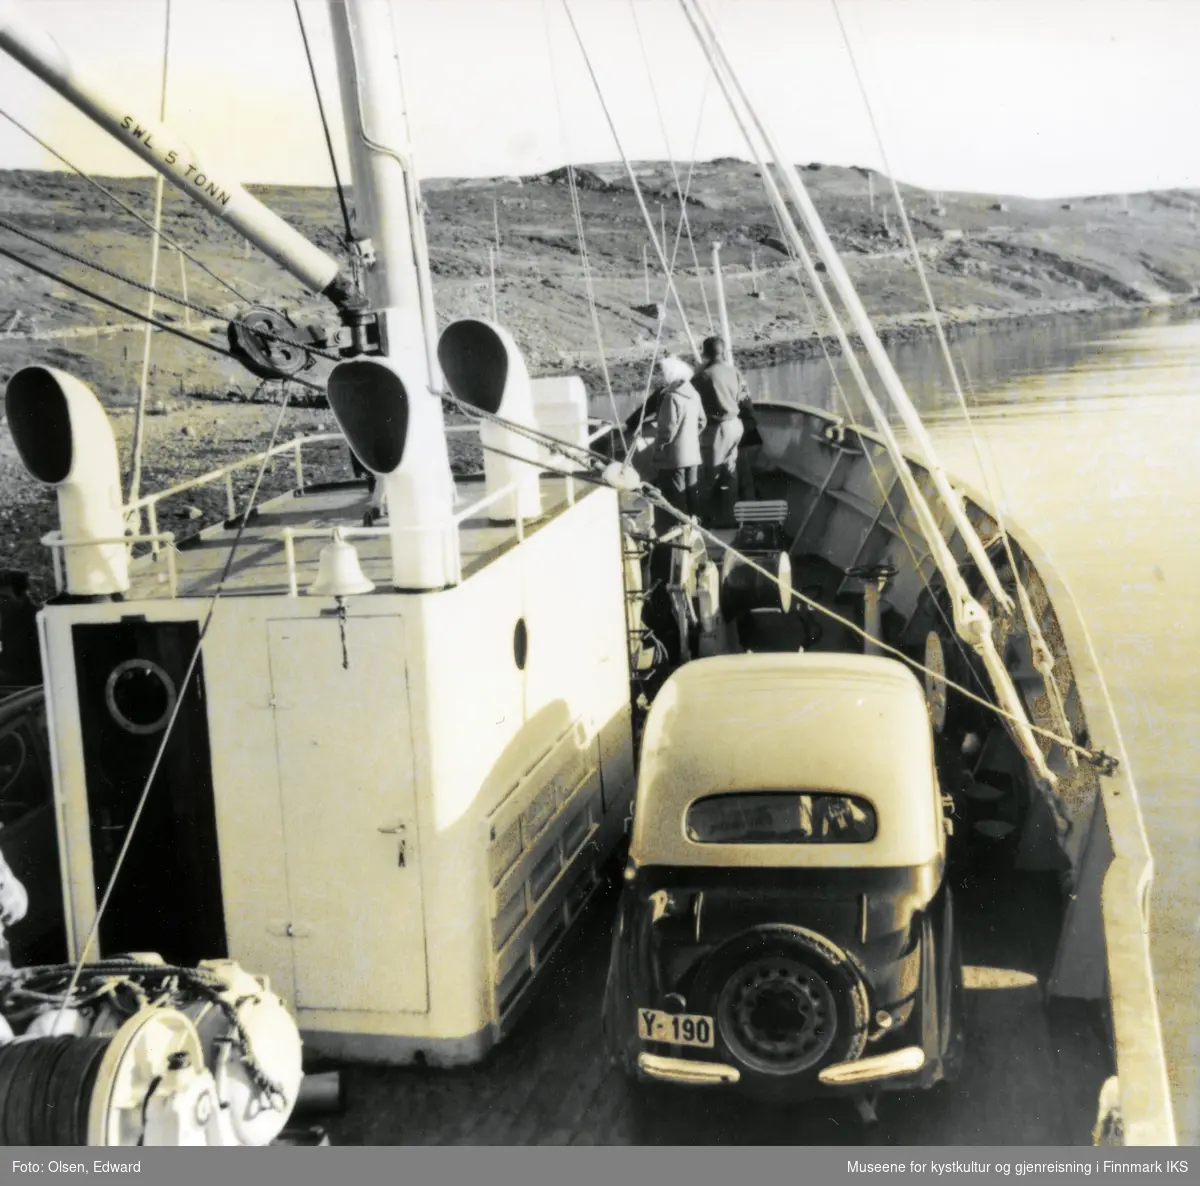 Russenes. En Opel Kadett 1938 modell, registrering Y-190, plassert ved kahytten ombord i lokalbåten M/S 'Ingøy'. Antatt 1957.